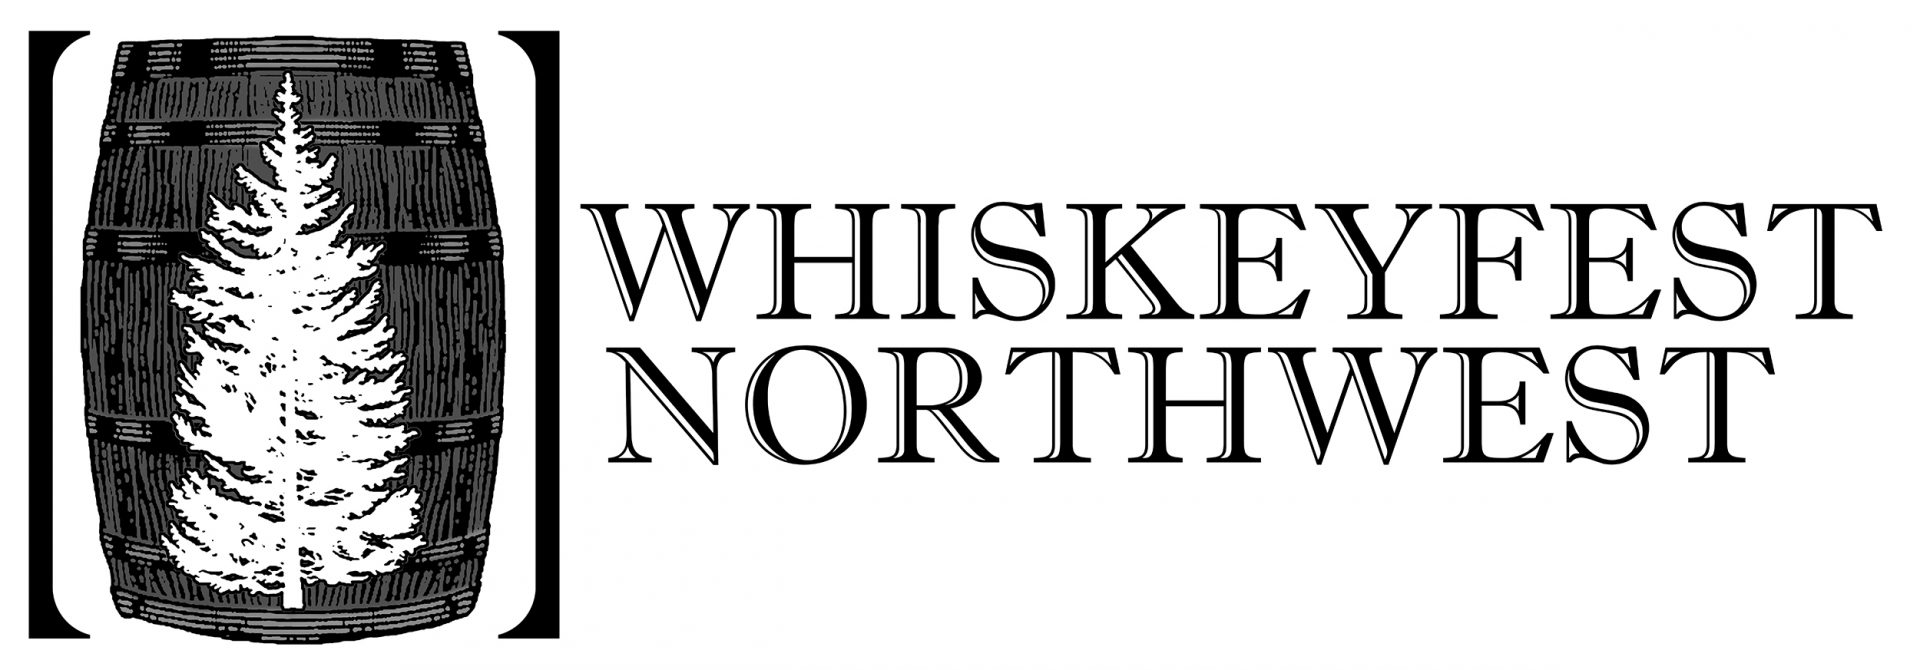 Whiskeyfest Northwest Sticker